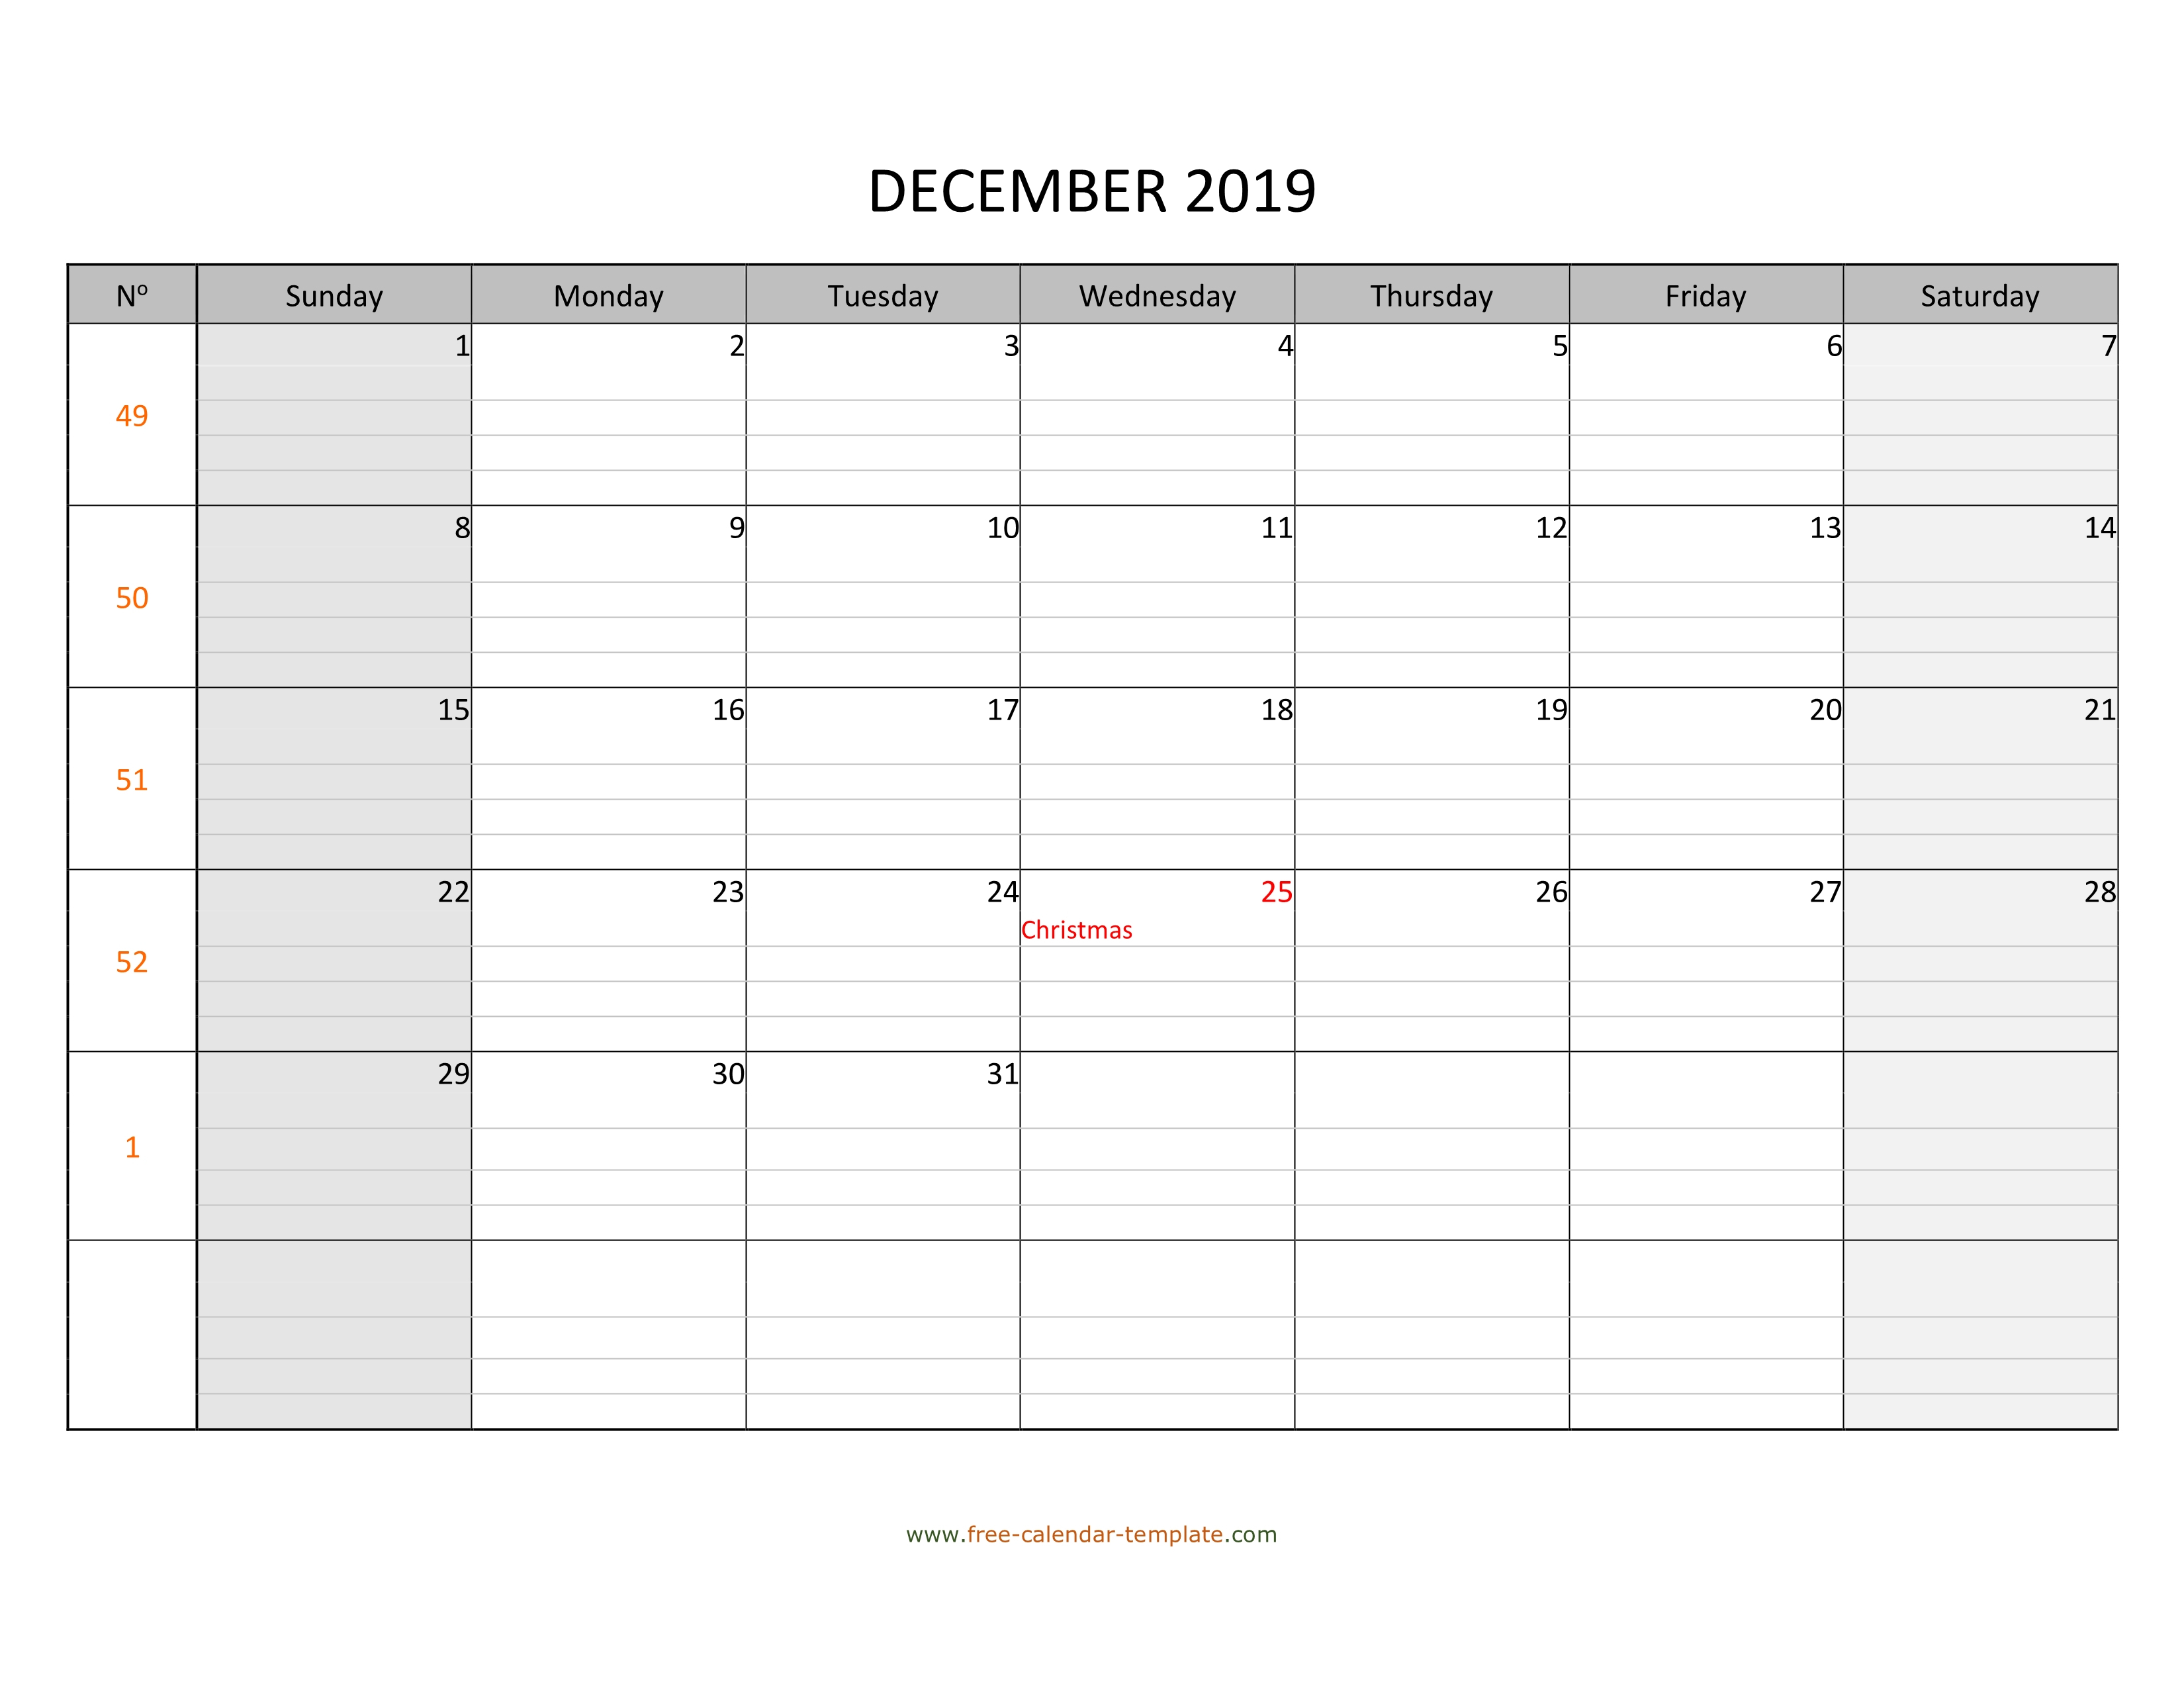 December 2019 Free Calendar Tempplate | Free-Calendar